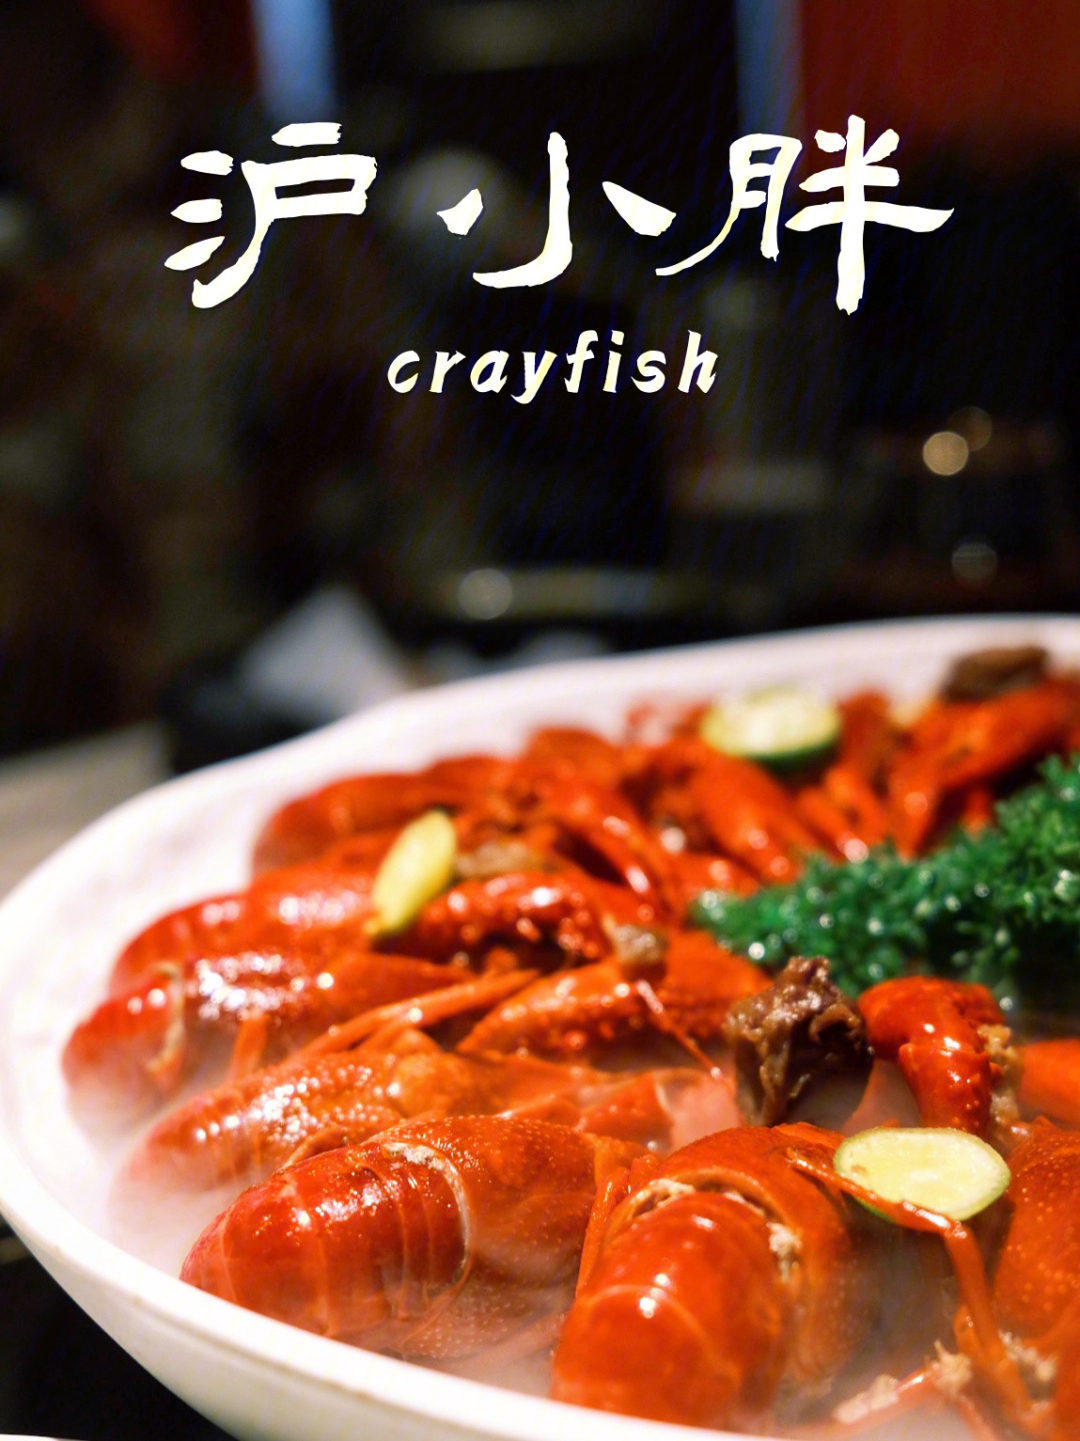 这就来打卡一波网红的上海小龙虾沪小胖,人气很旺哦,还没到饭点已经